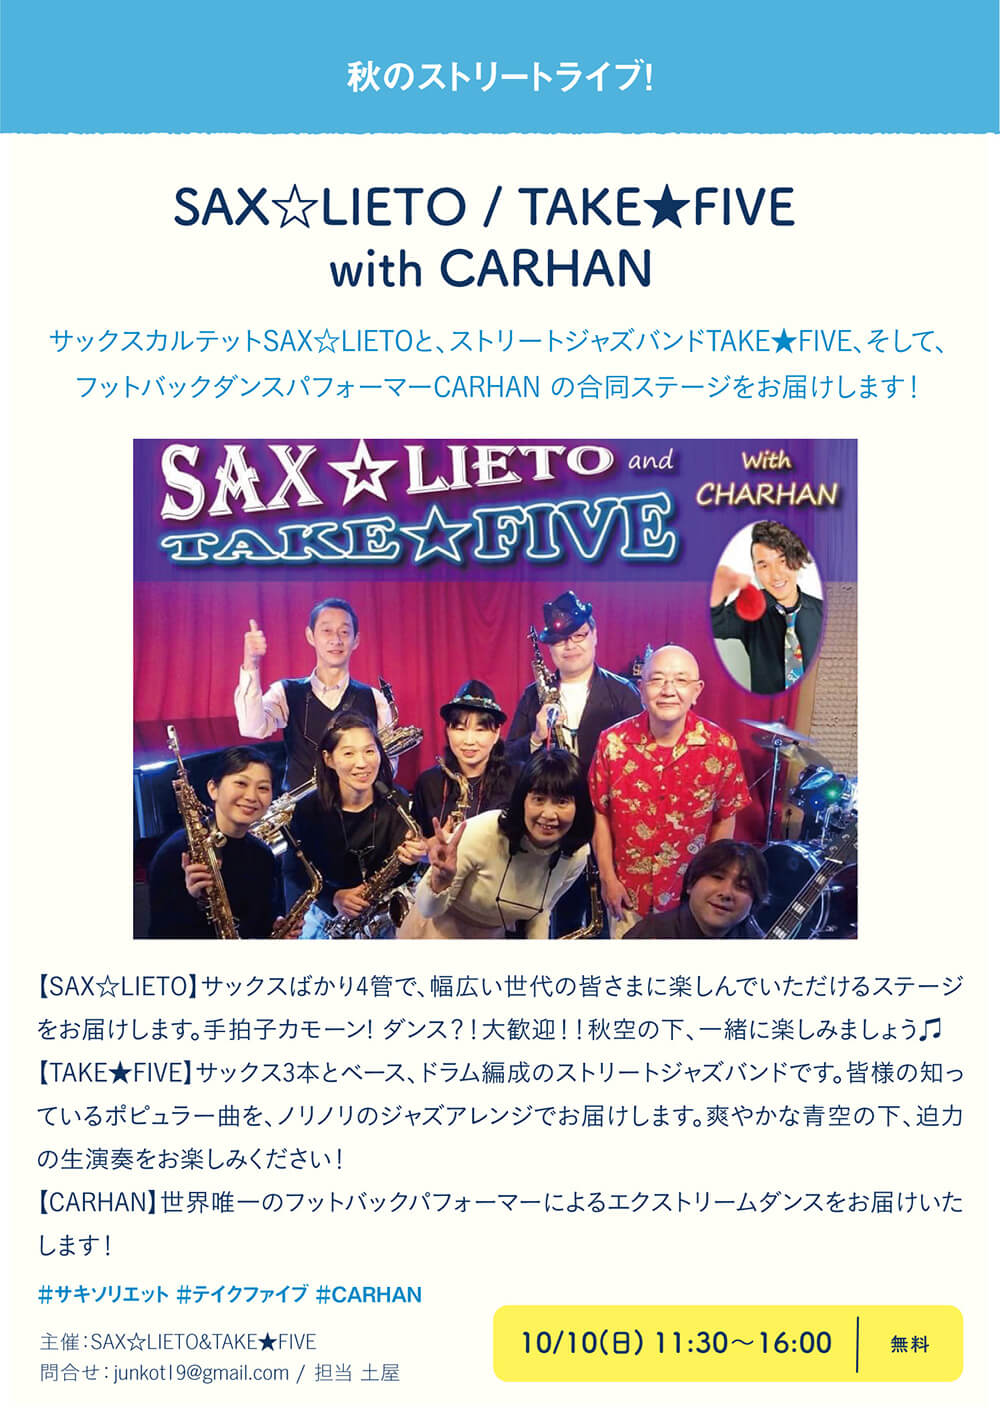 SAX☆LIETO / TAKE★FIVE with CARHAN